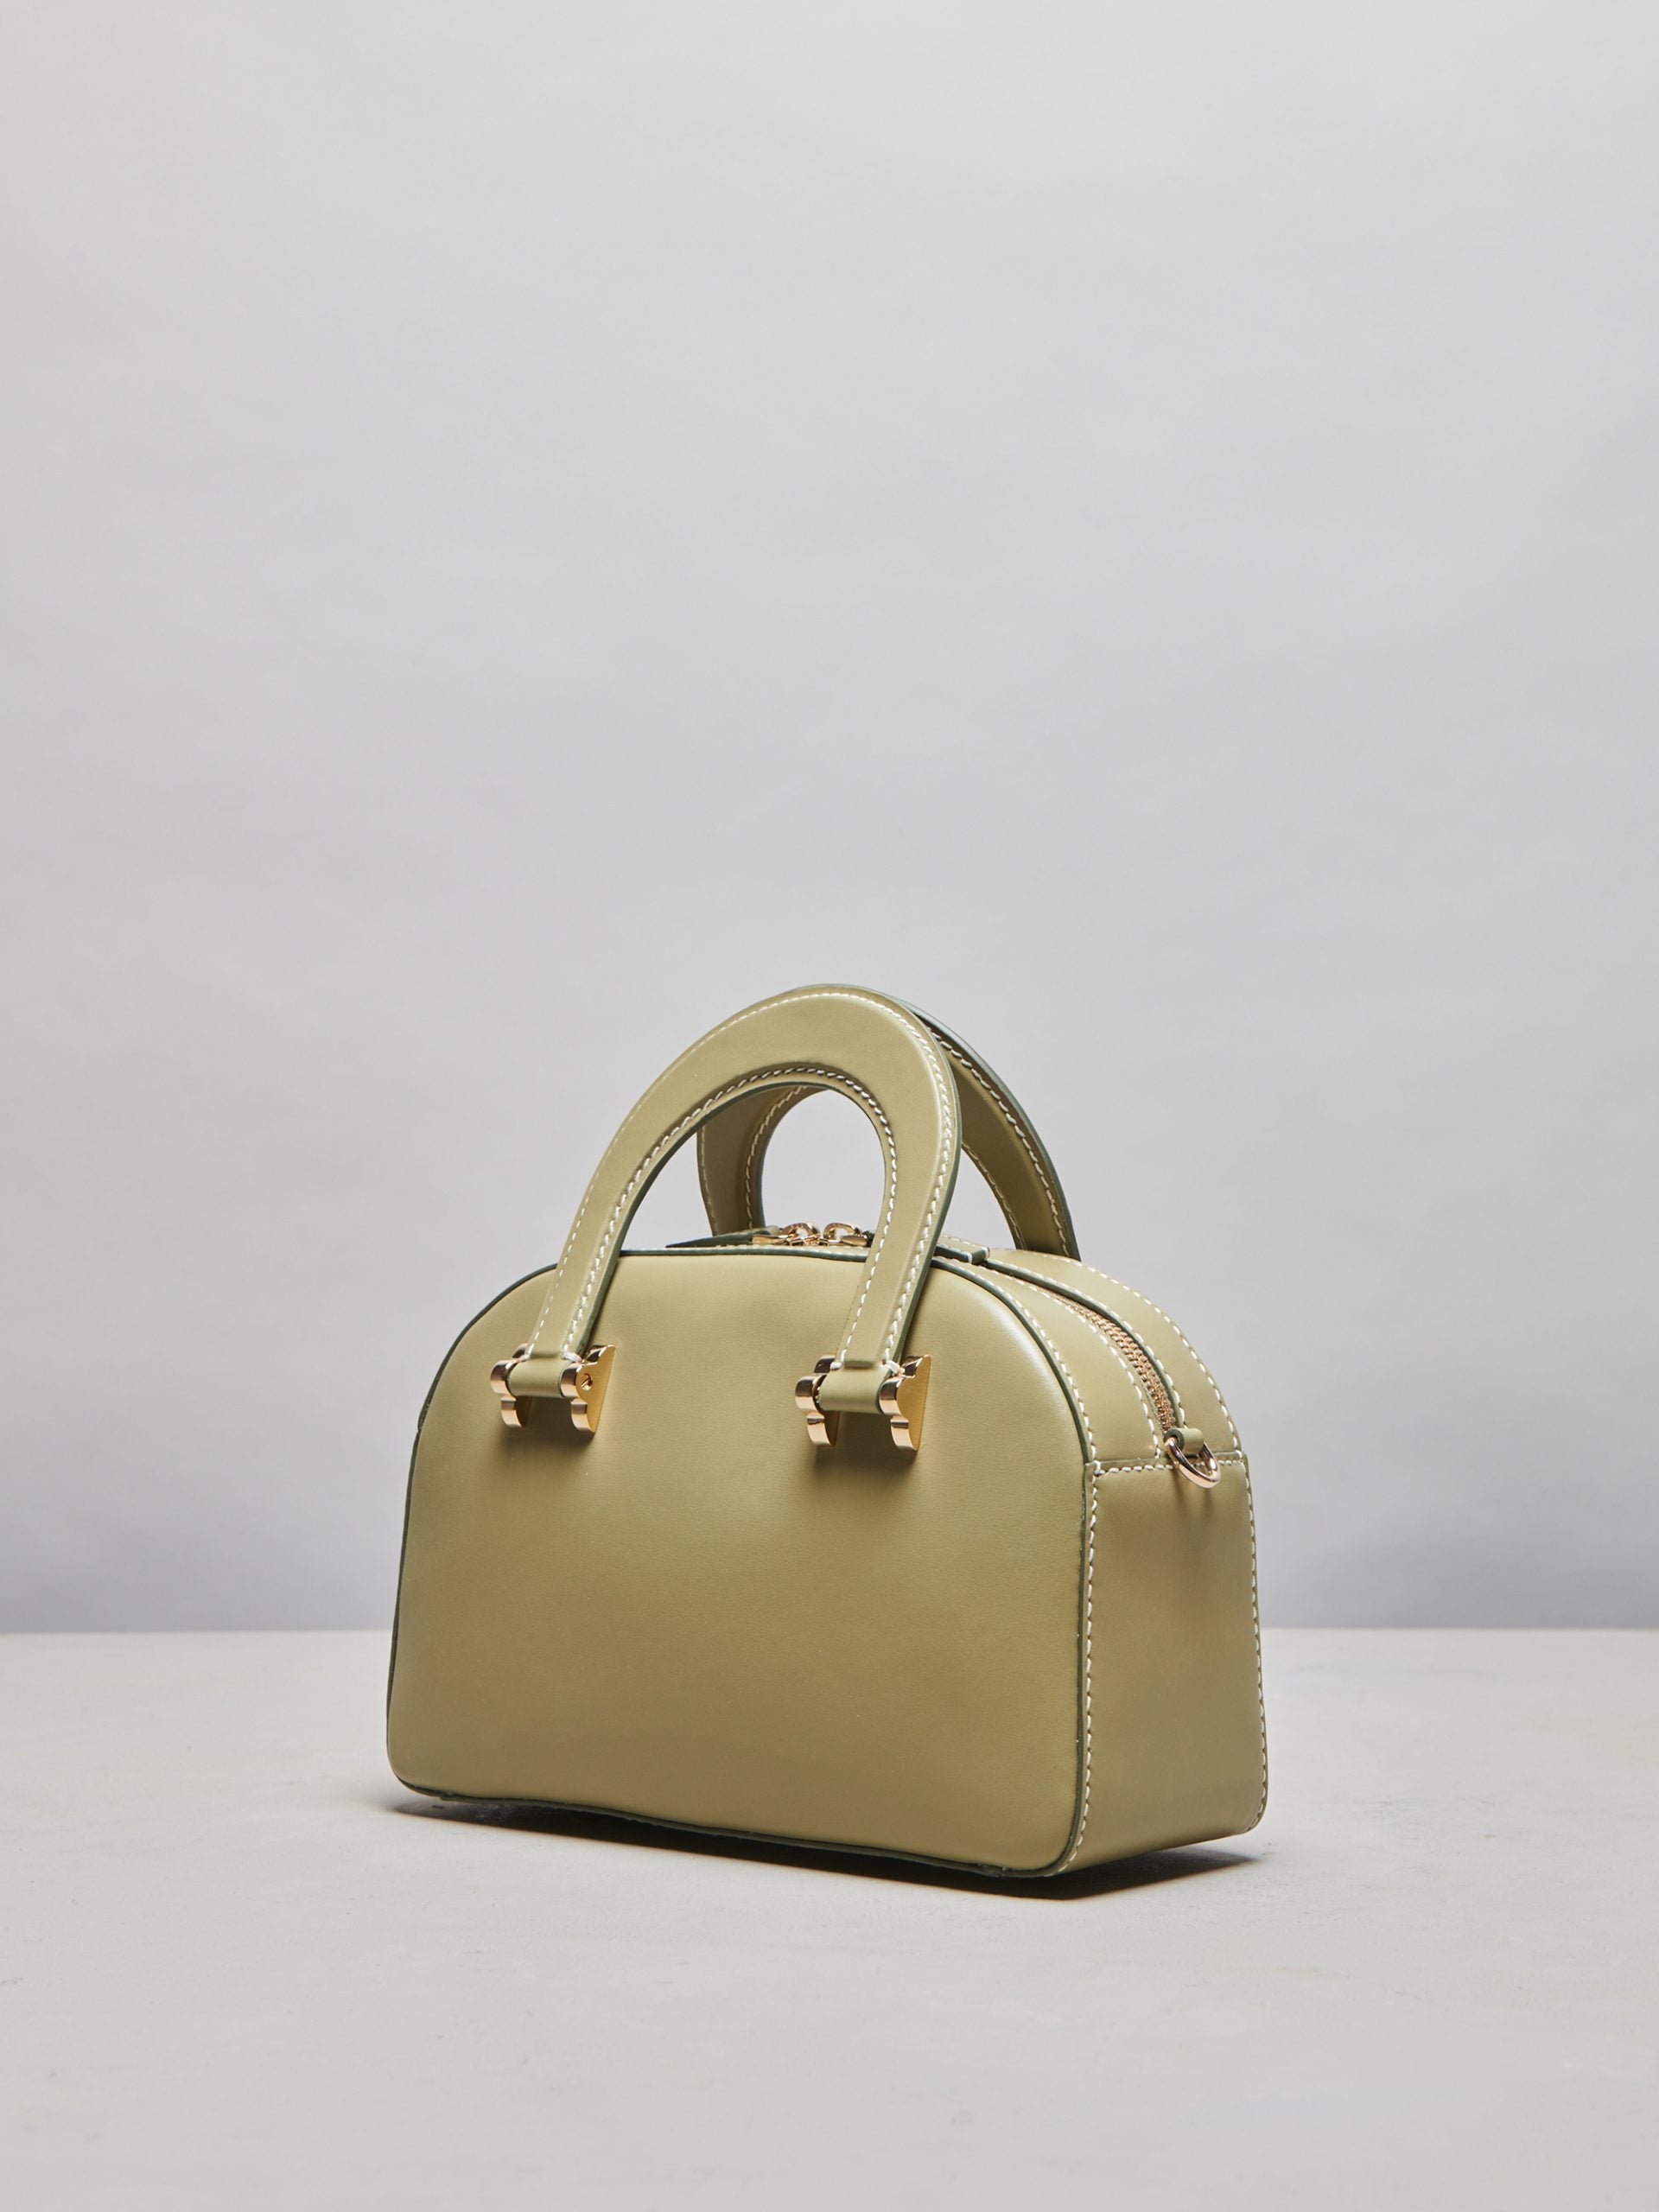 Ninni Olive Handbag